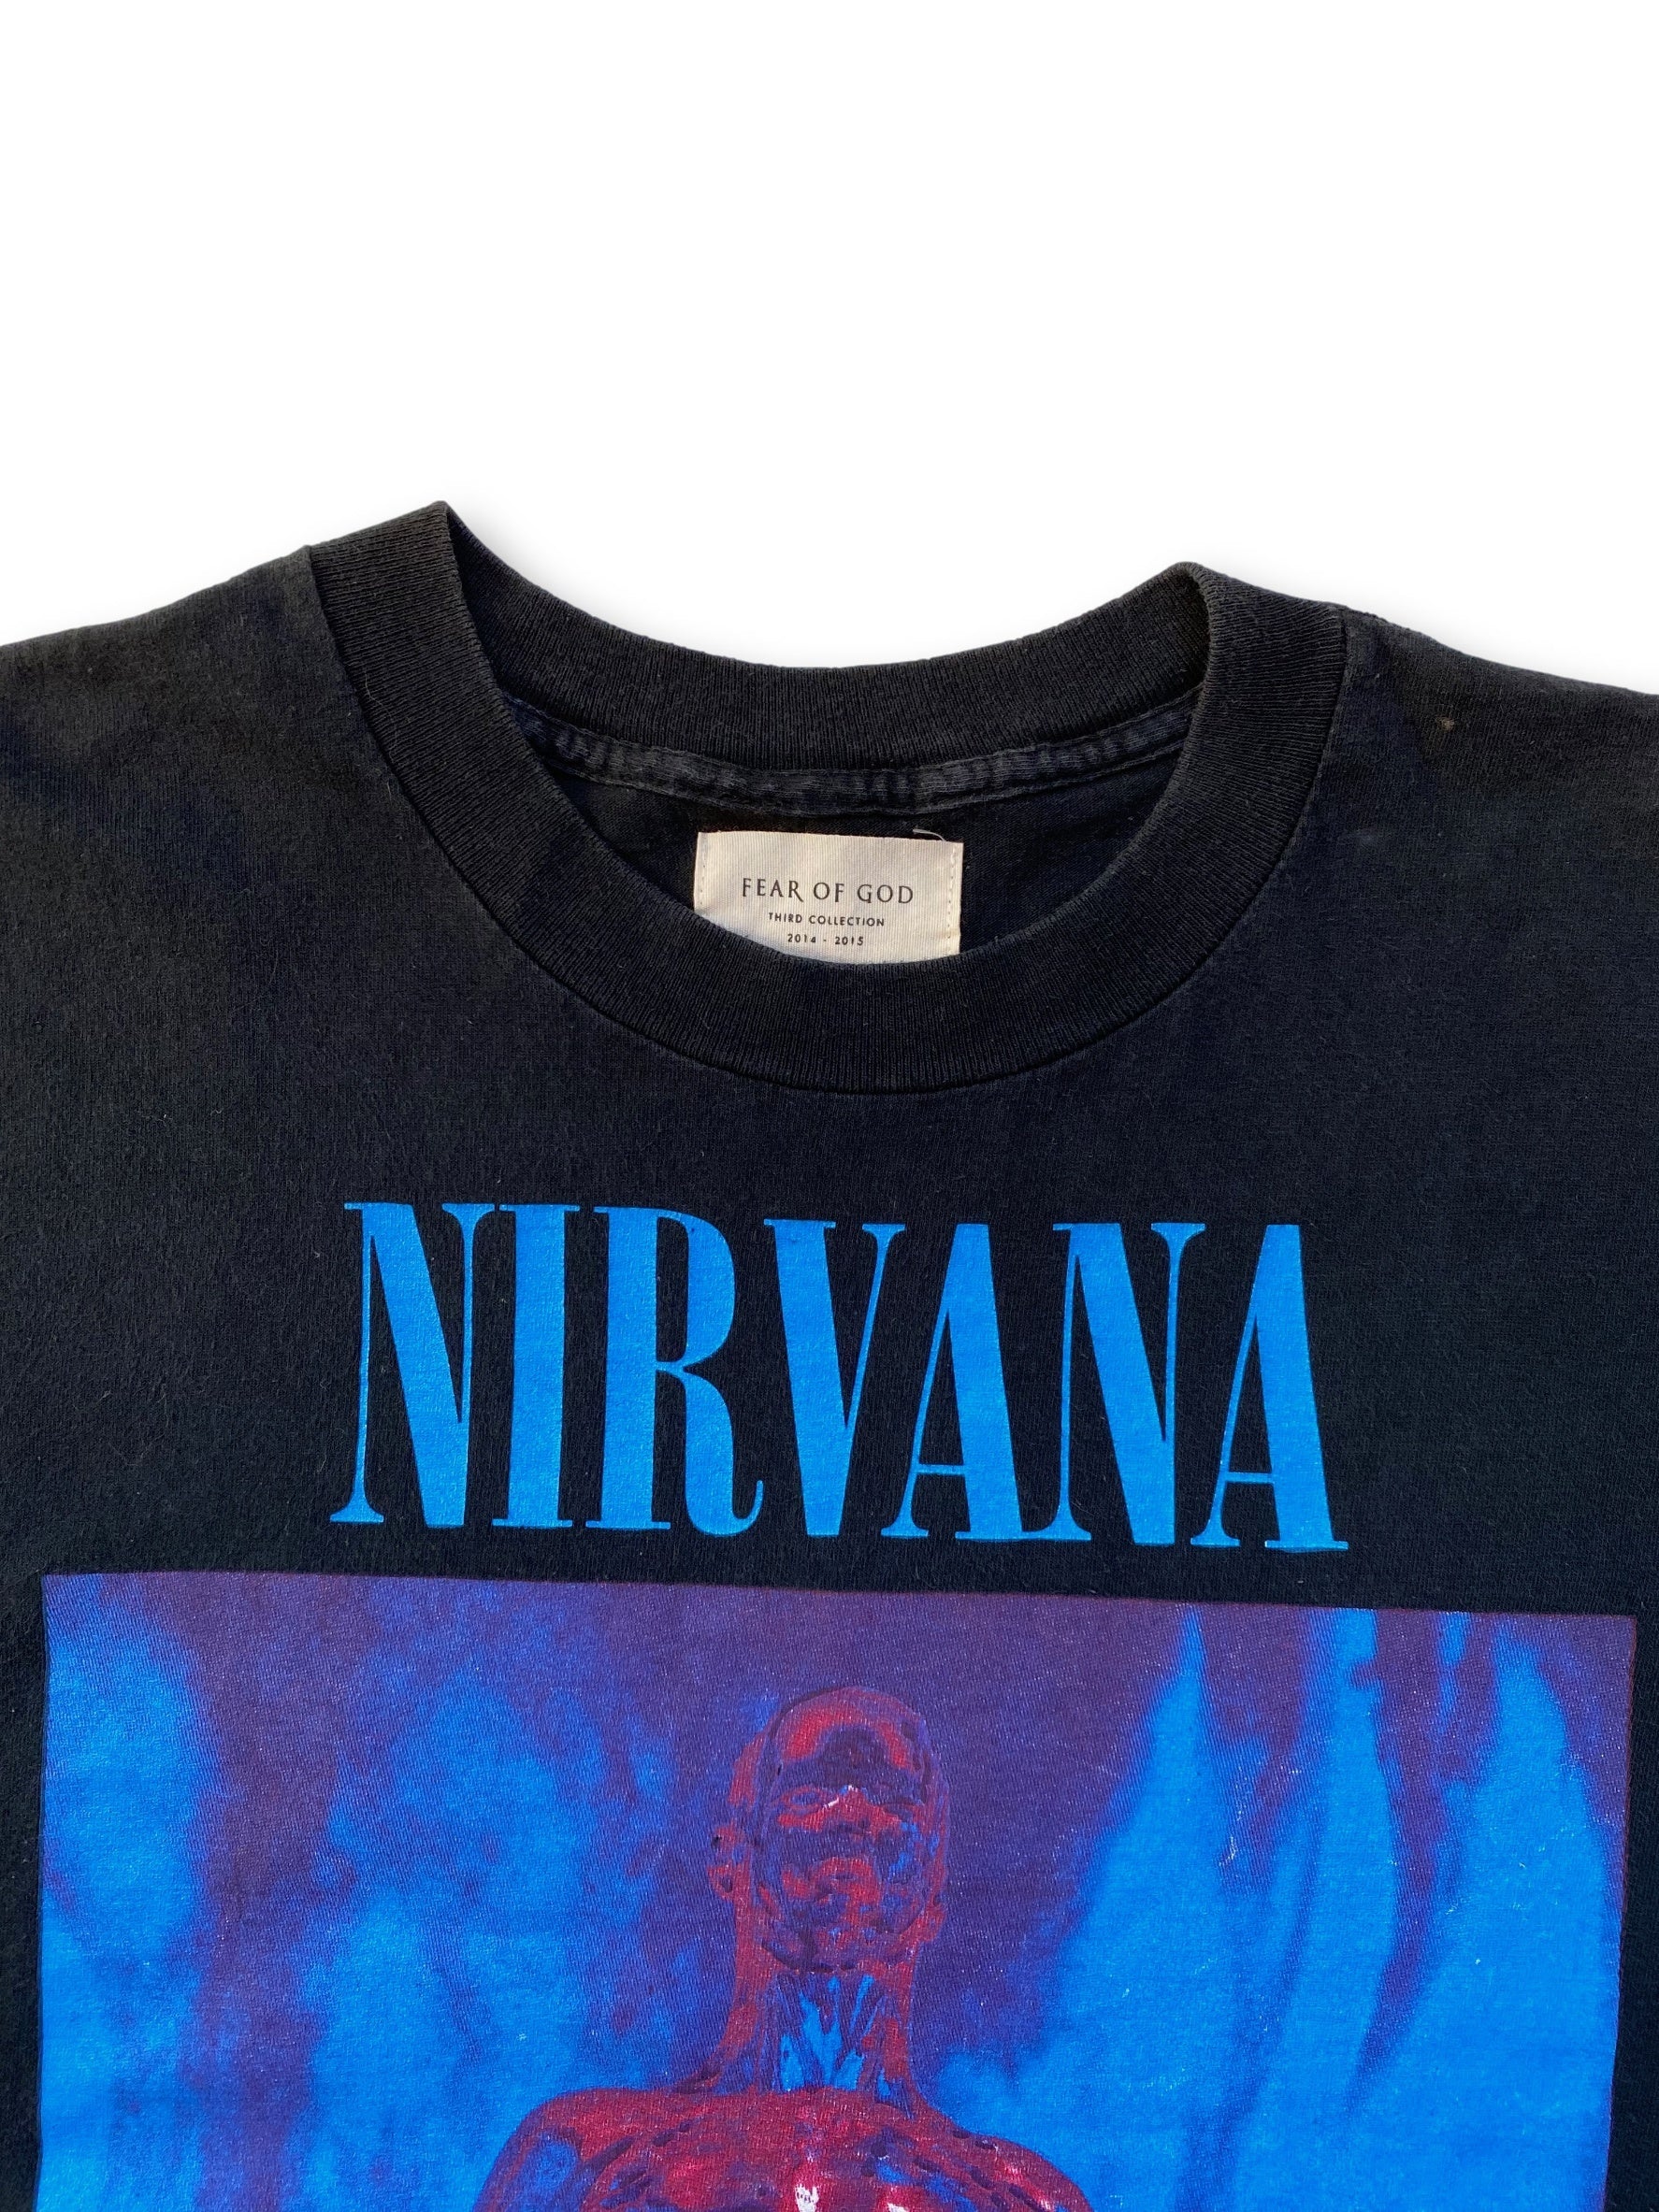 Vintage Nirvana Sliver x Fear of God Rock T-Shirt - L/XL (RSVP Gallery